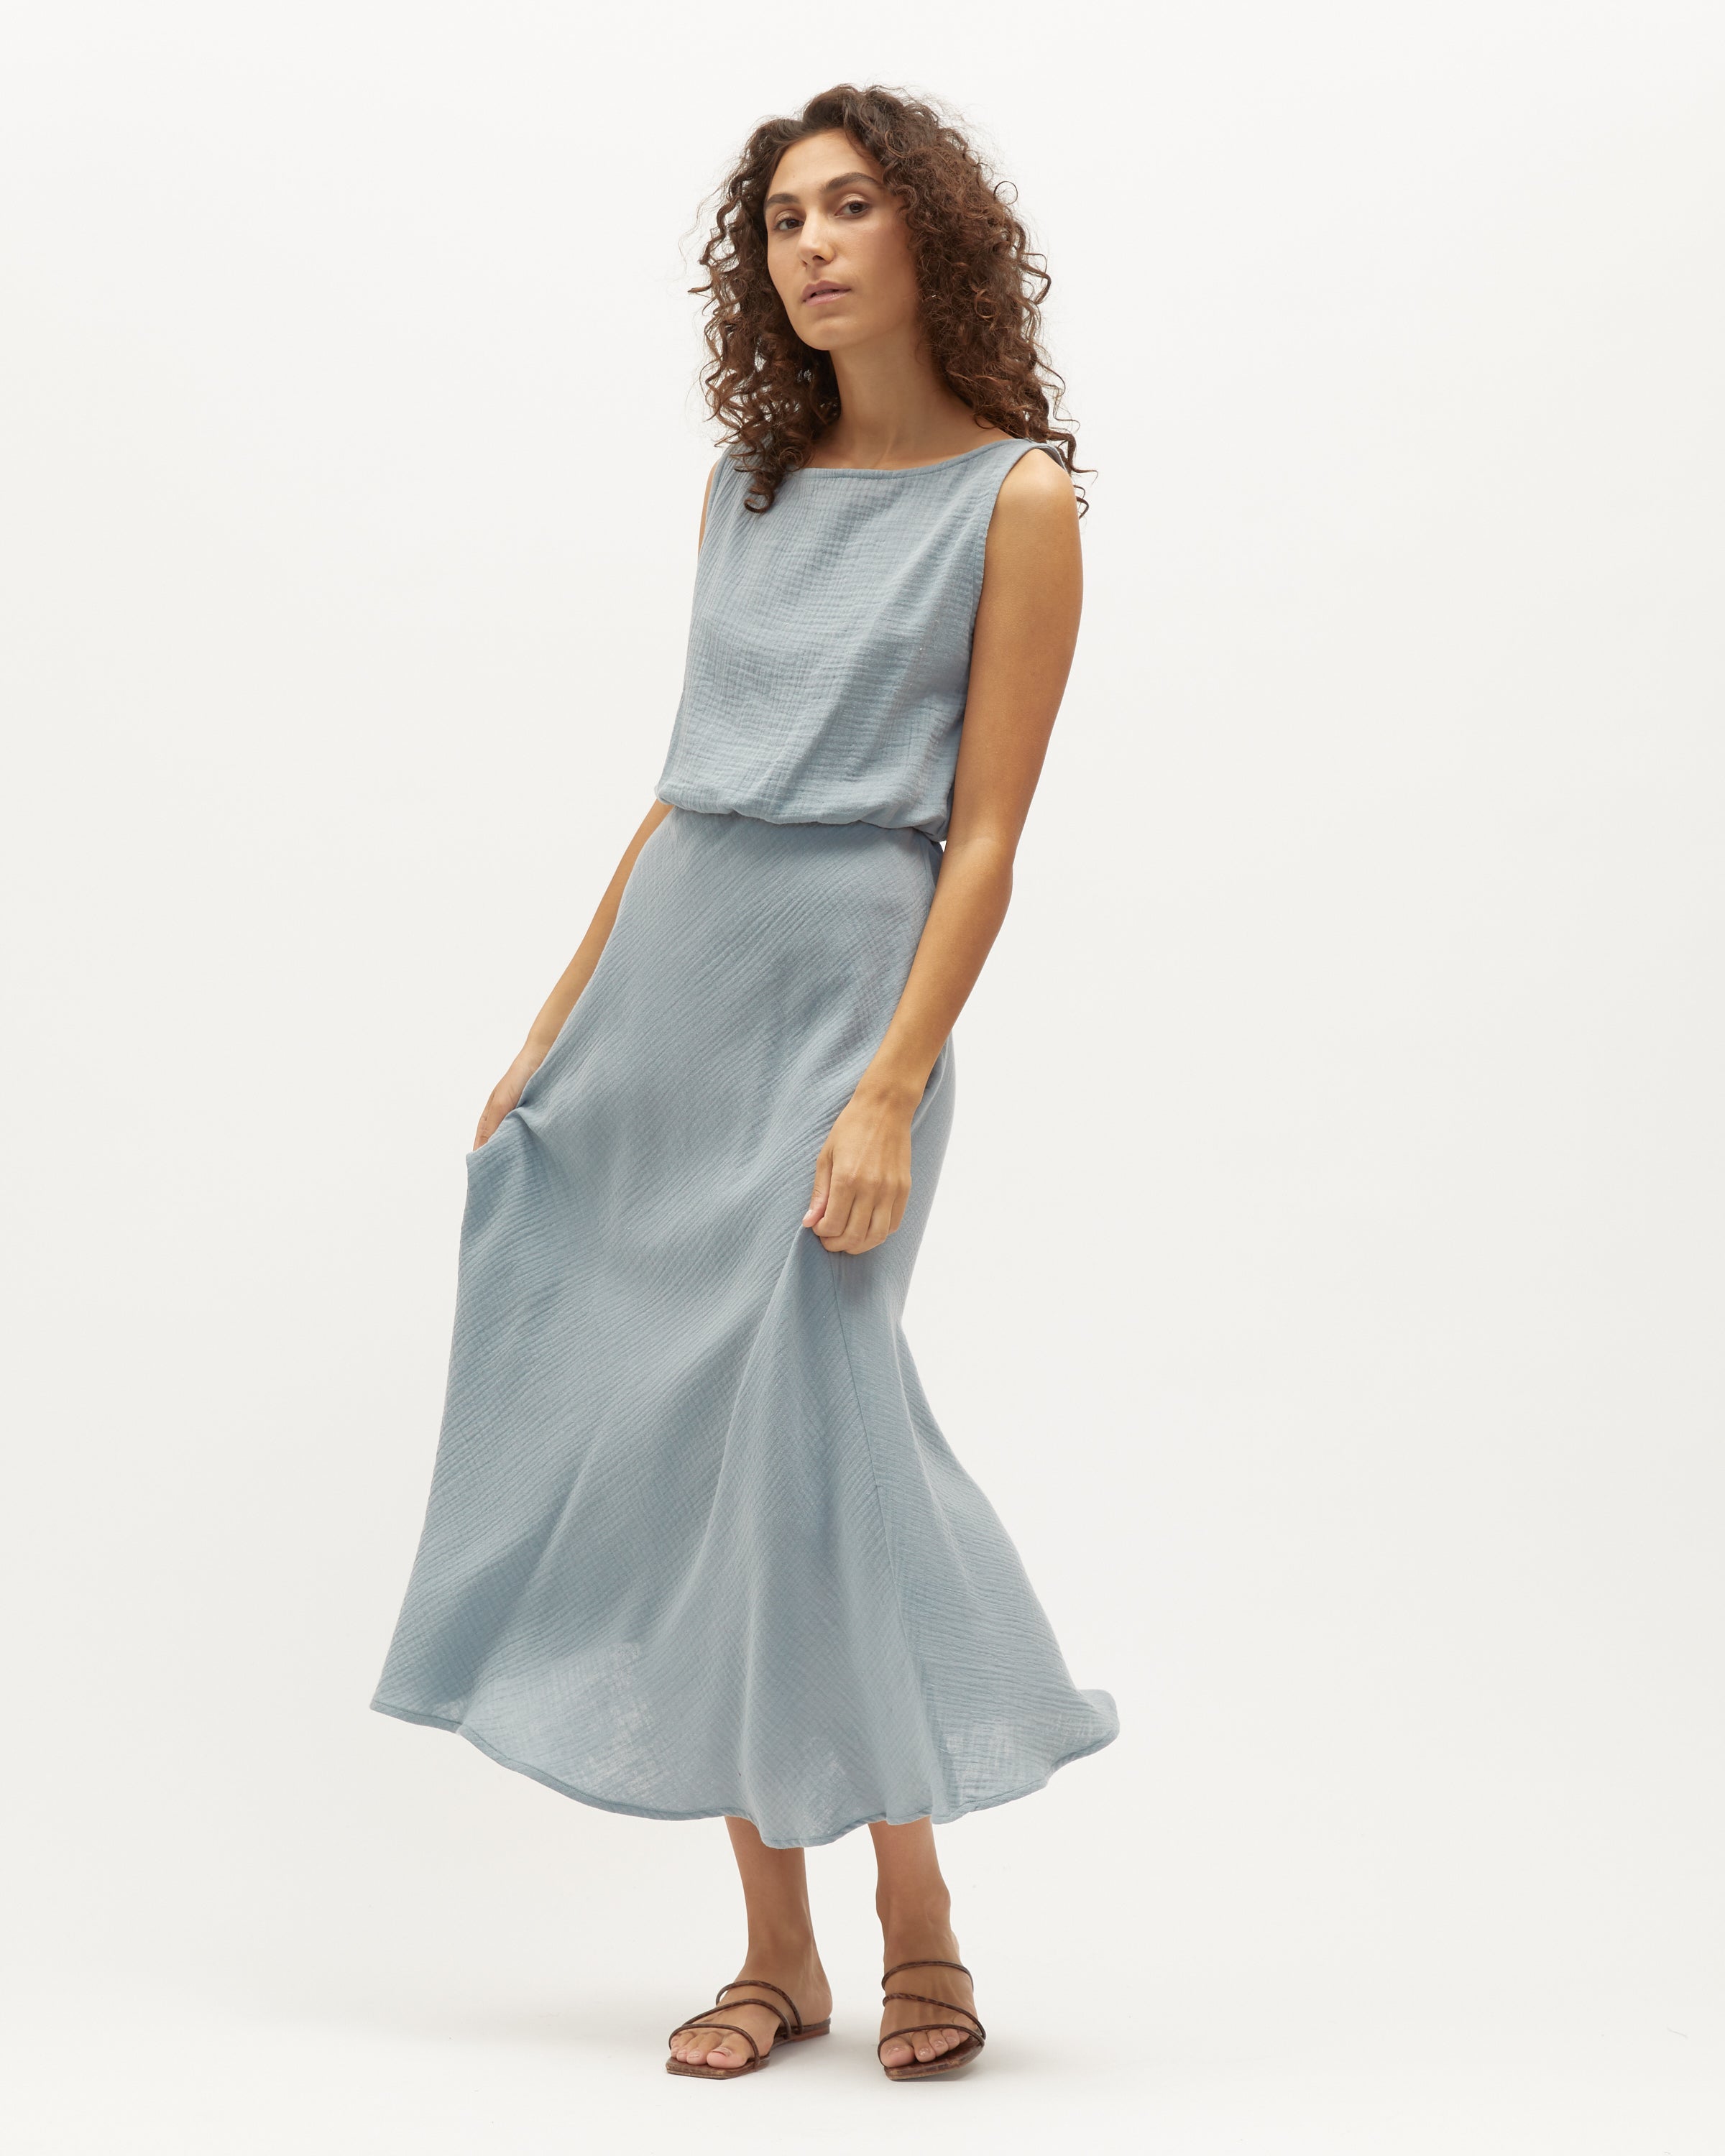 Wray Dress | Seafoam $269